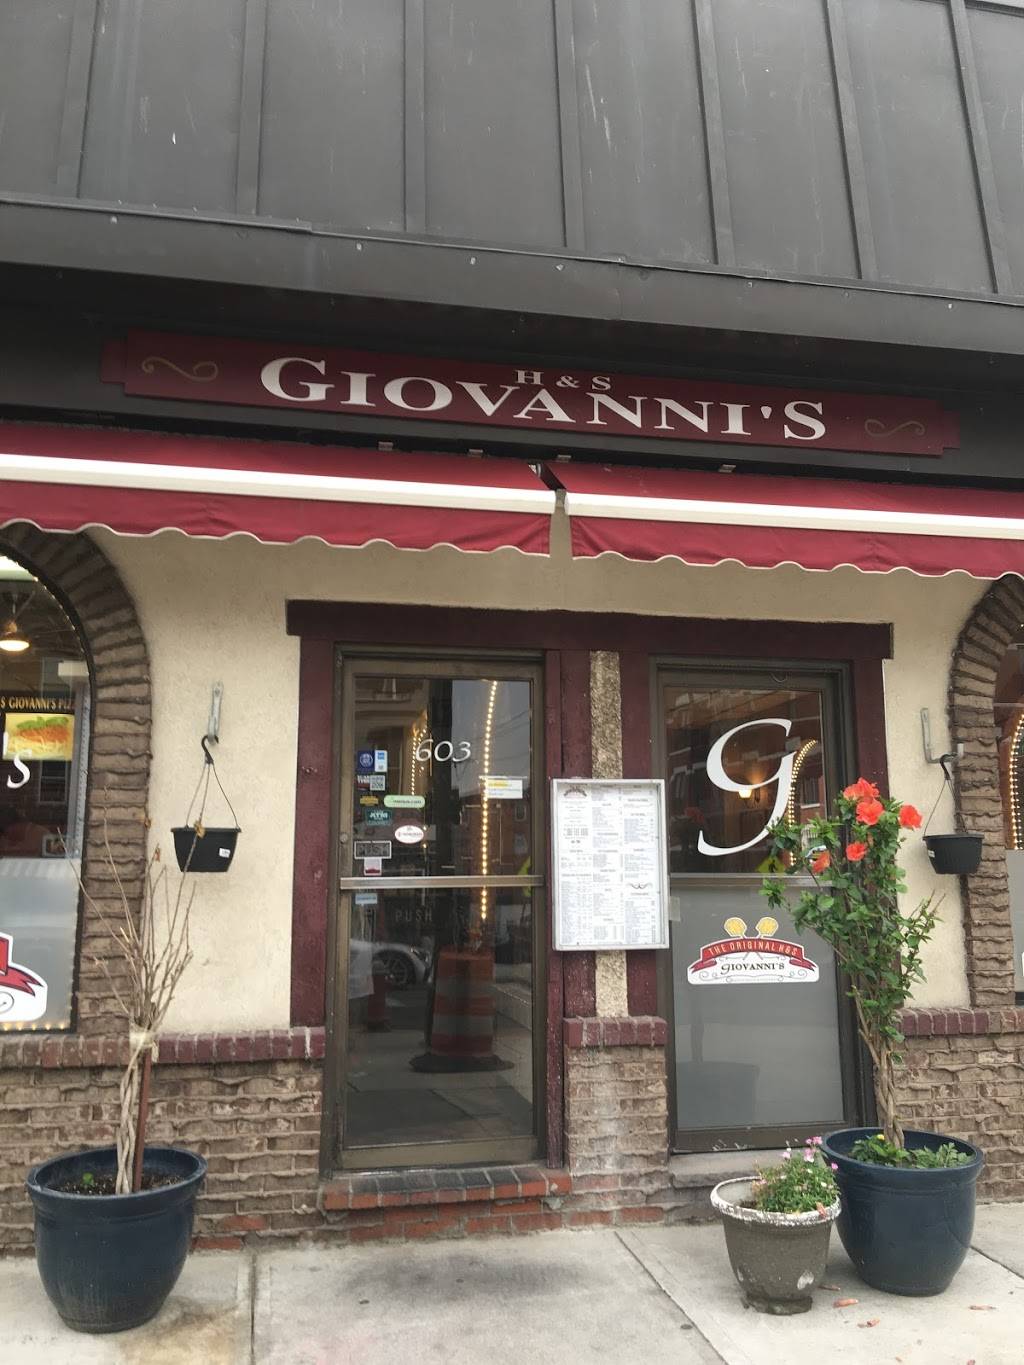 H&S Giovannis Restaurant & Pizzeria | restaurant | 603 Washington St, Hoboken, NJ 07030, USA | 2017144232 OR +1 201-714-4232